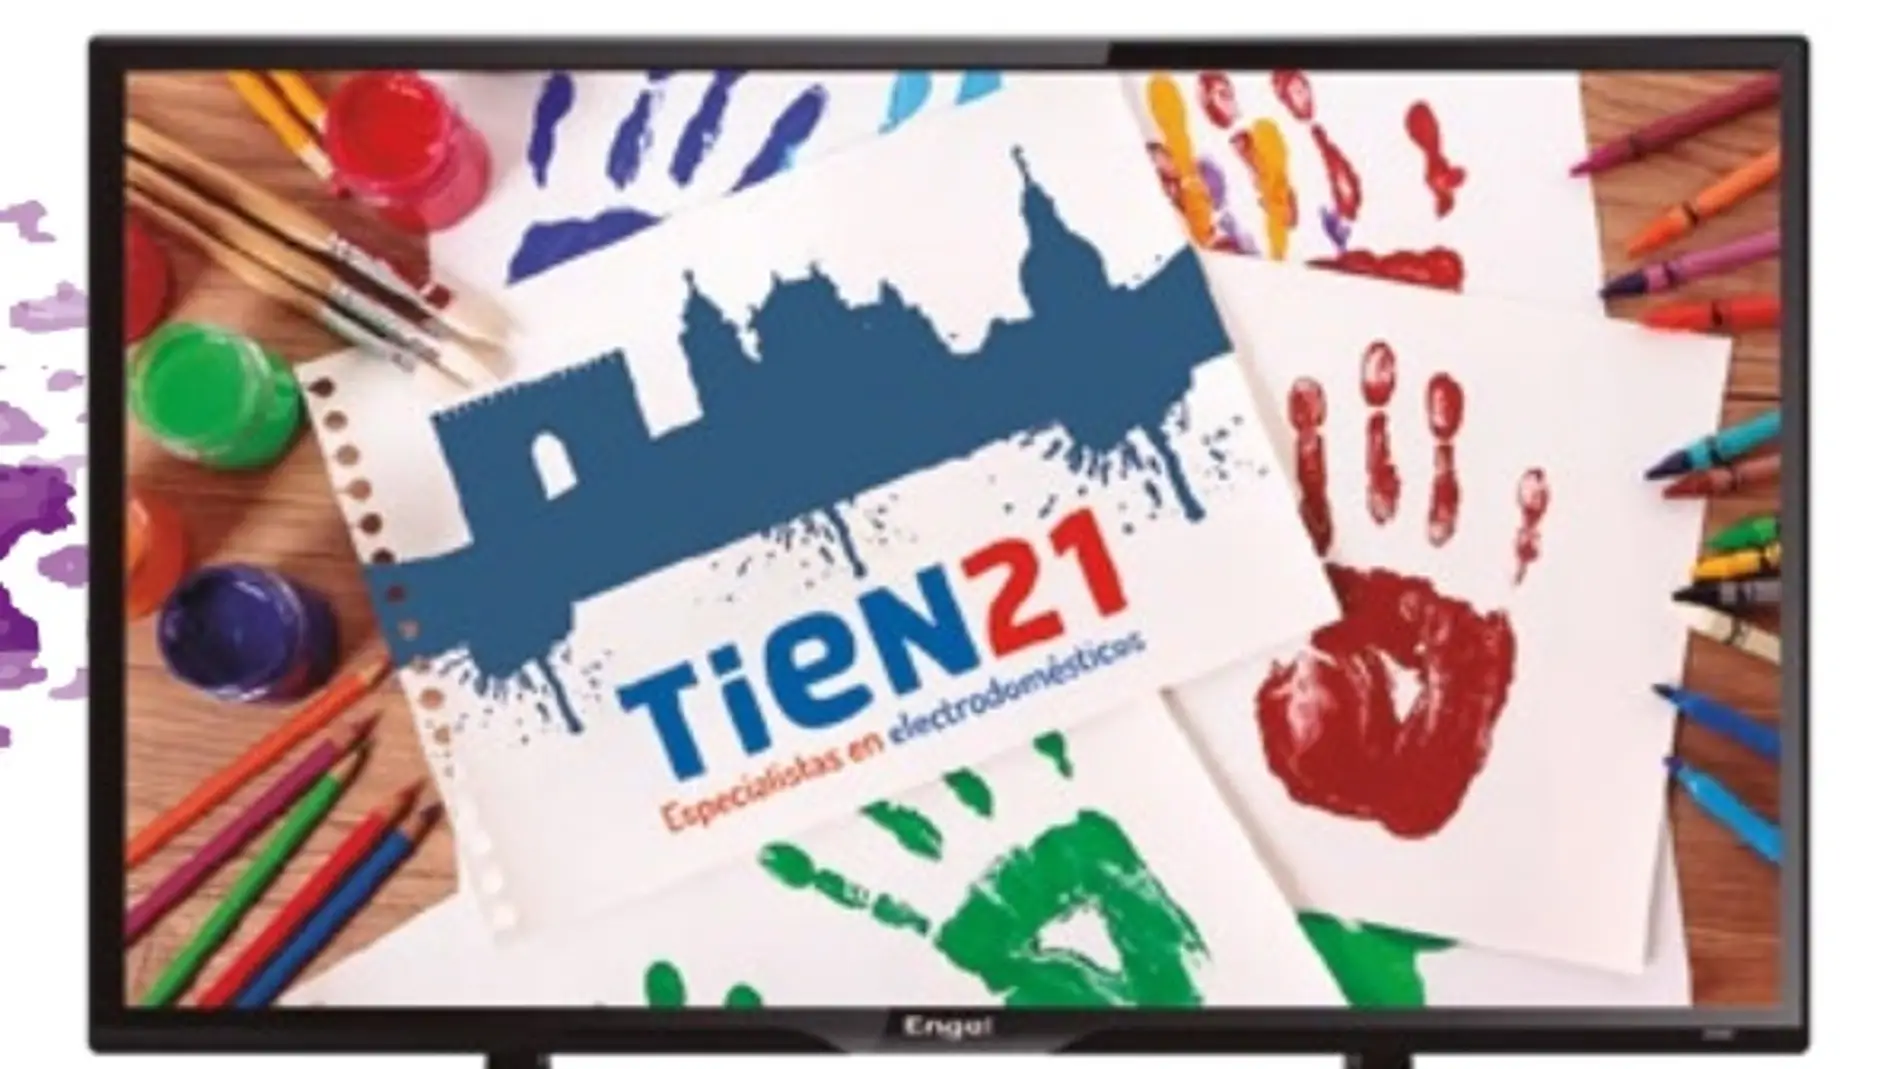 Tien21 en Talavera lanza un concurso de dibujo